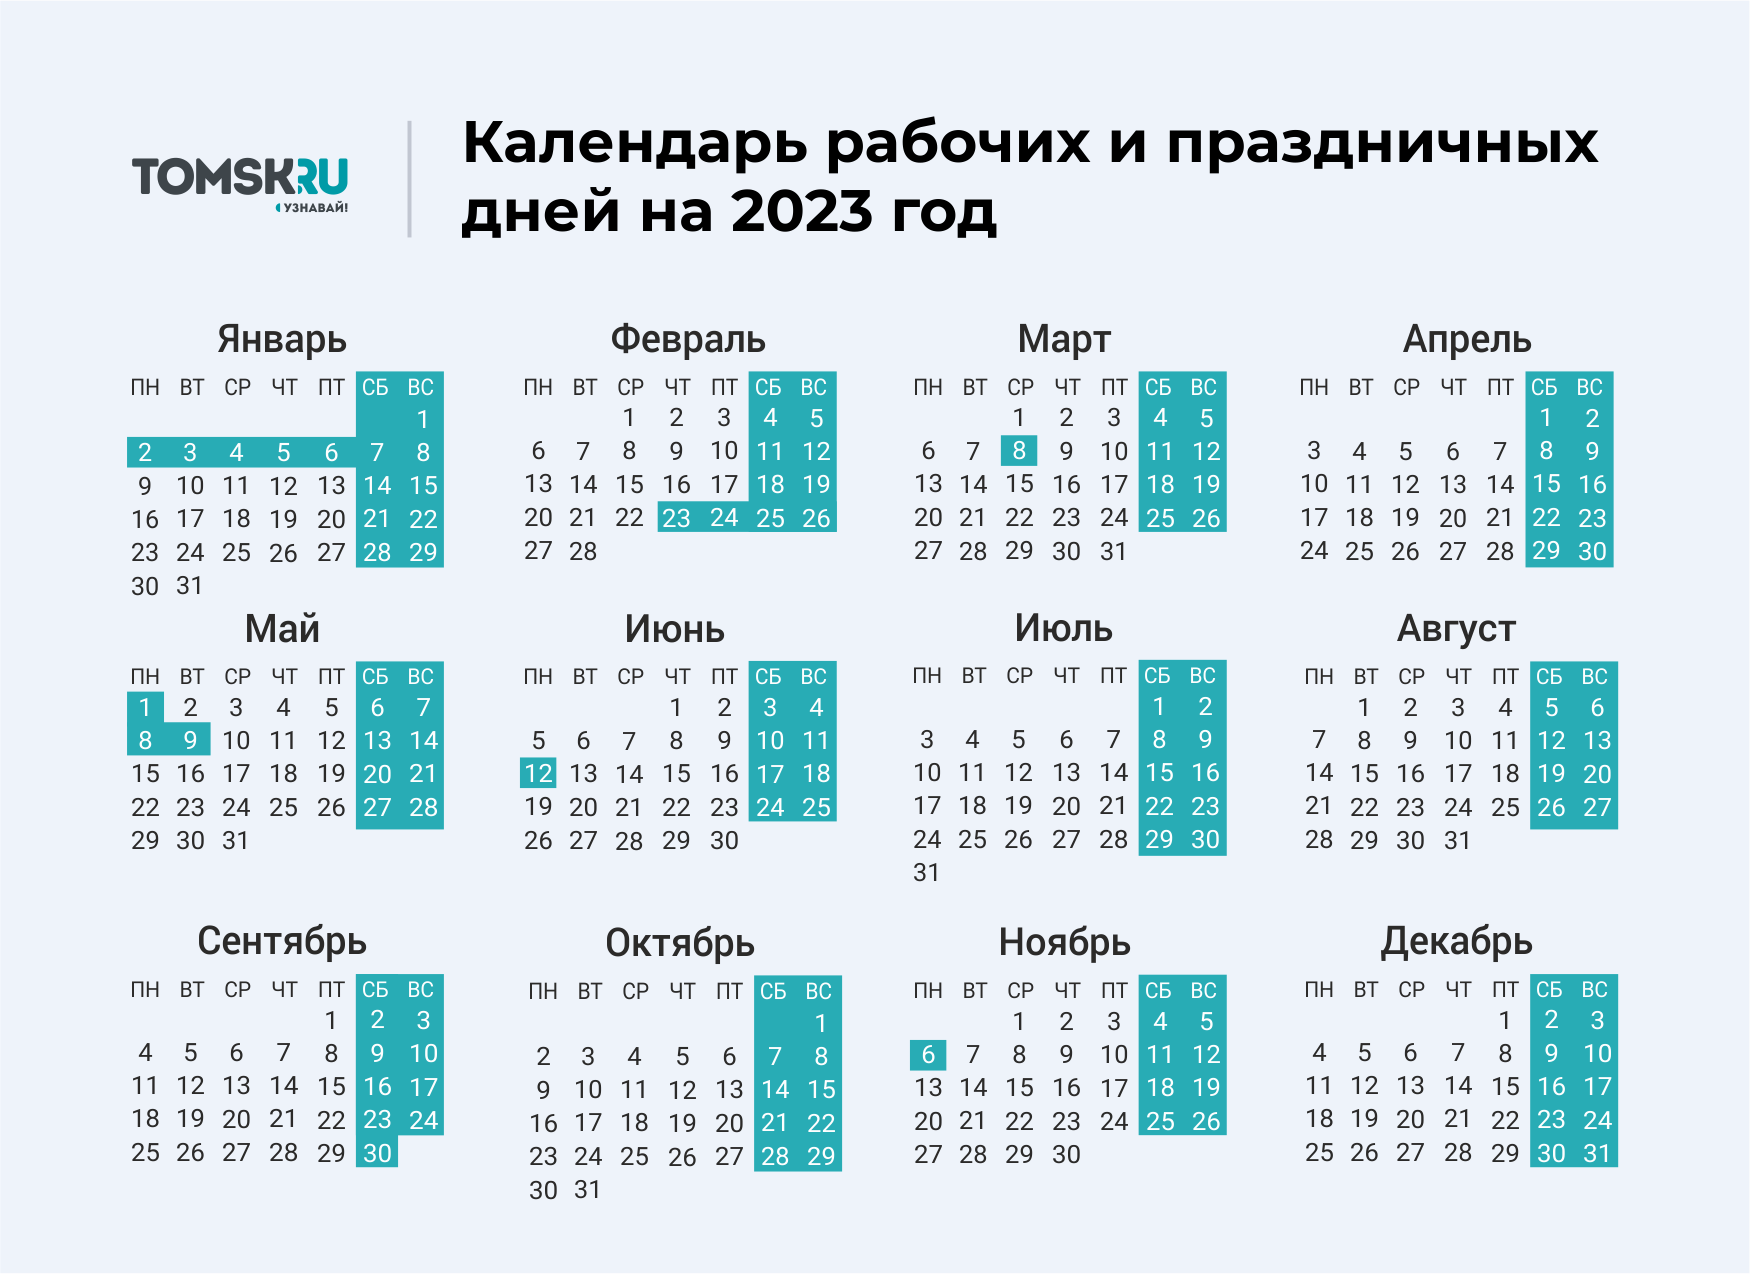 Как отдыхает шестидневка в мае 2024. Выходные дни в 2023 году в России календарь. Календарь выходных и праздничных дней на 2023 год в России. Календарь праздничных выходеыхв 2023 году. Календарь на 2023 год с праздниками и выходными выходные снизу.